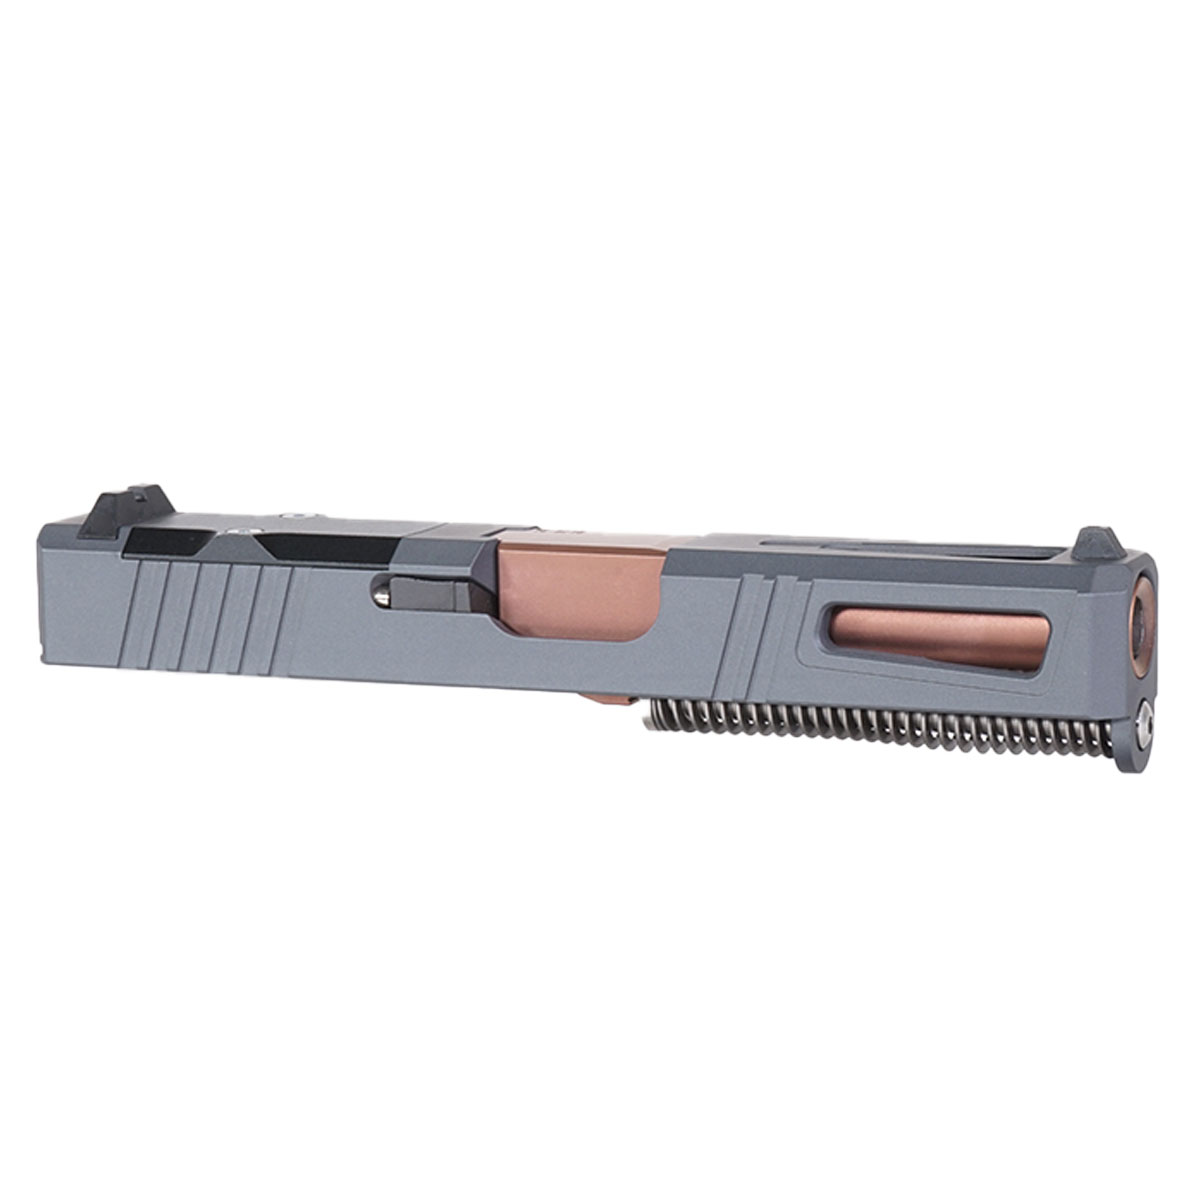 DTT 'Bronzesmith' 9mm Complete Slide Kit - Glock 19 Gen 1-3 Compatible